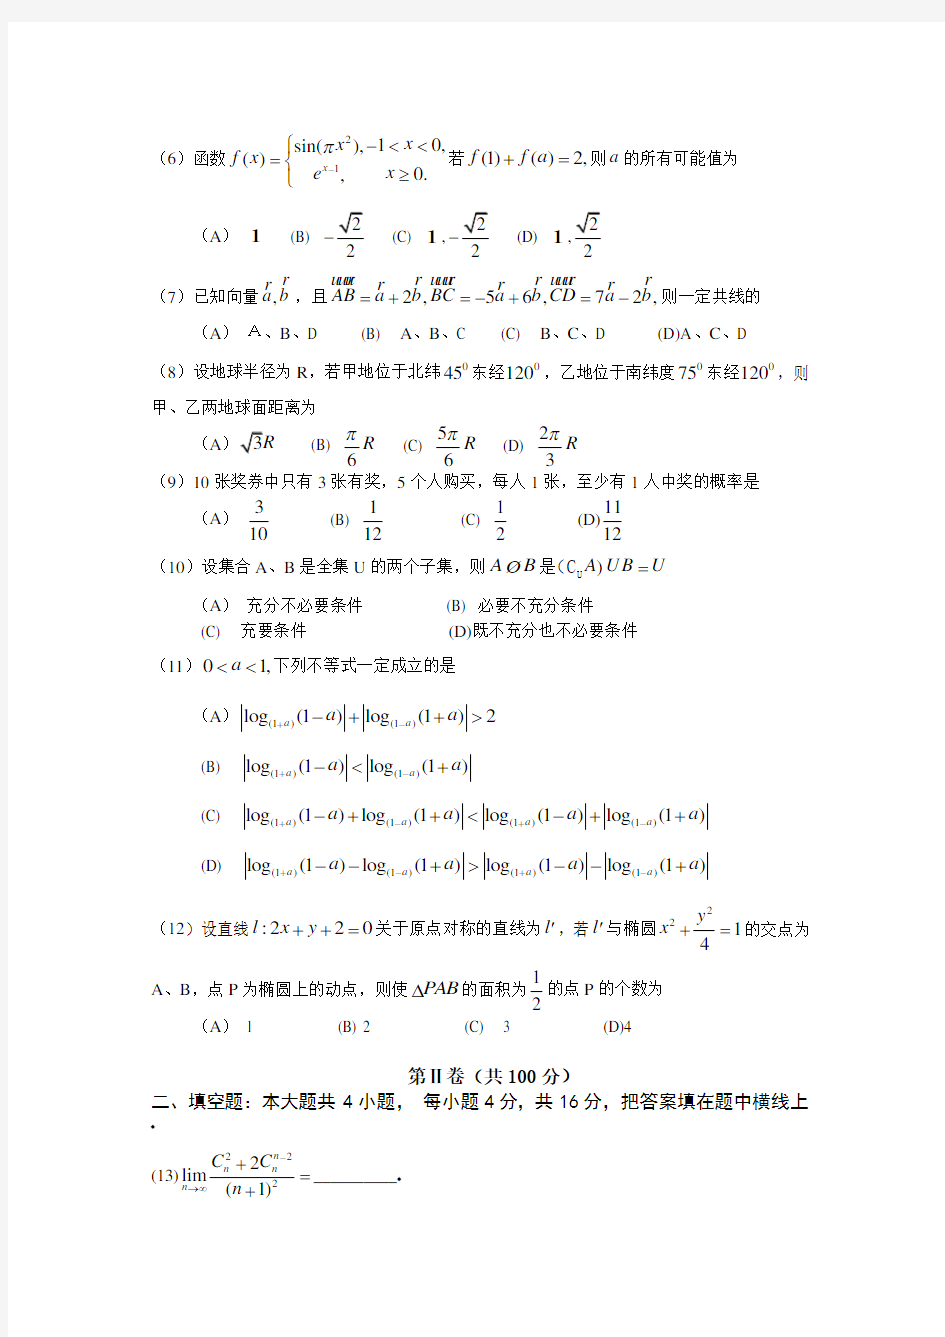 【高考试卷】2005年高考理科数学(山东卷)试题及答案